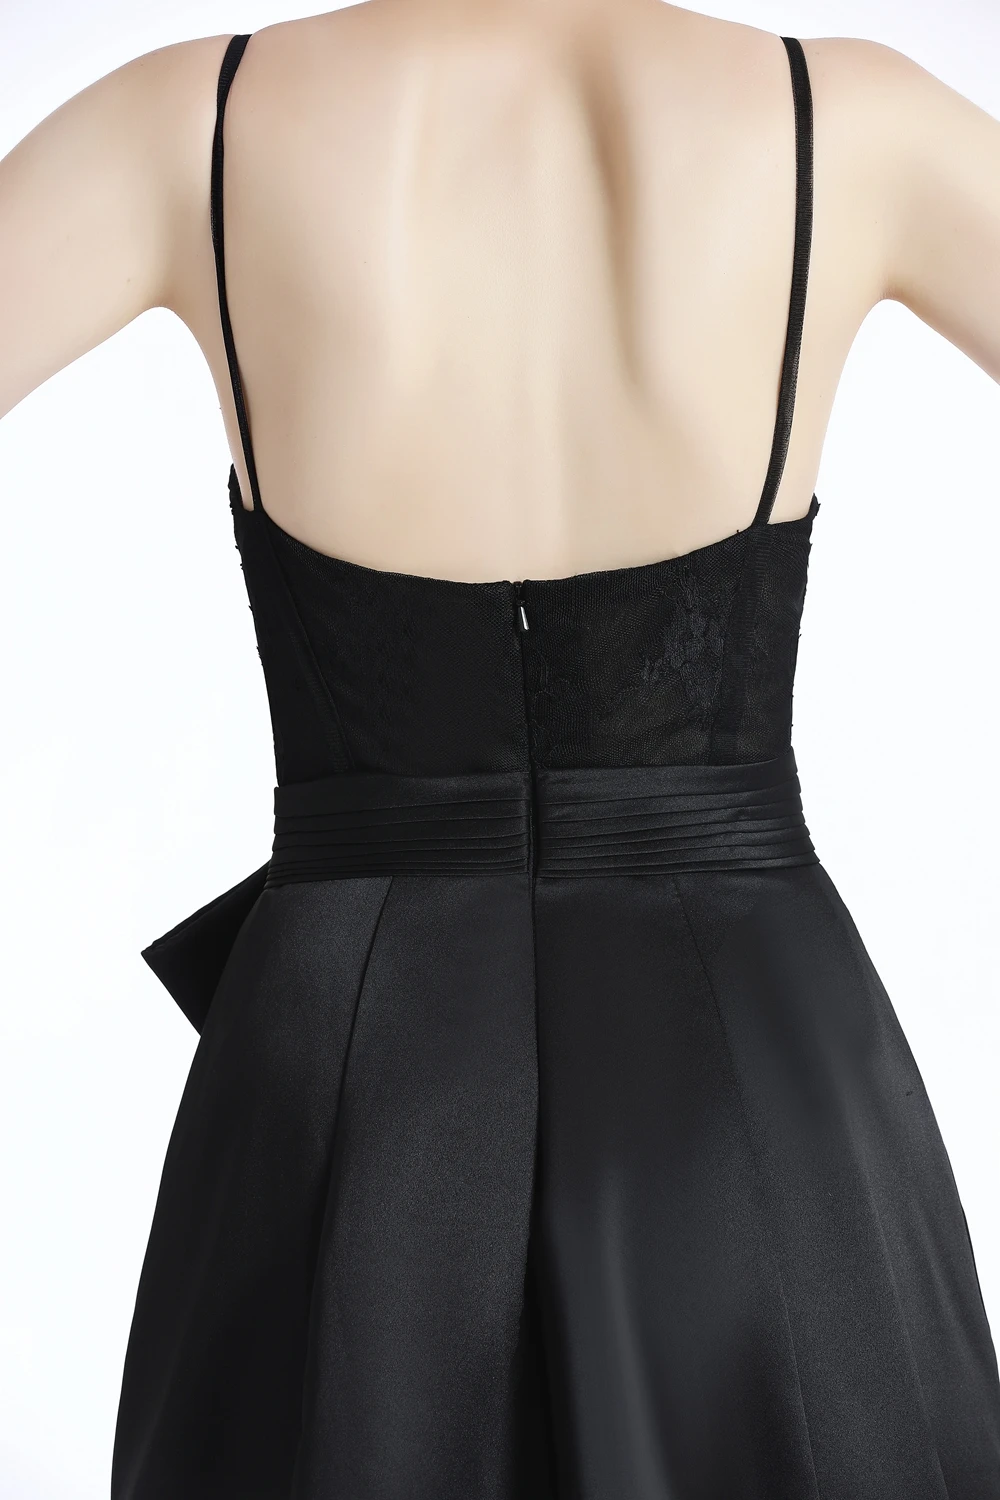 Распродажа Черное вечернее платье, пикантное v-образный вырез с коротким шлейфом Кружева с атласной открытой спиной простые Выпускные вечерние платья Robe De Soiree